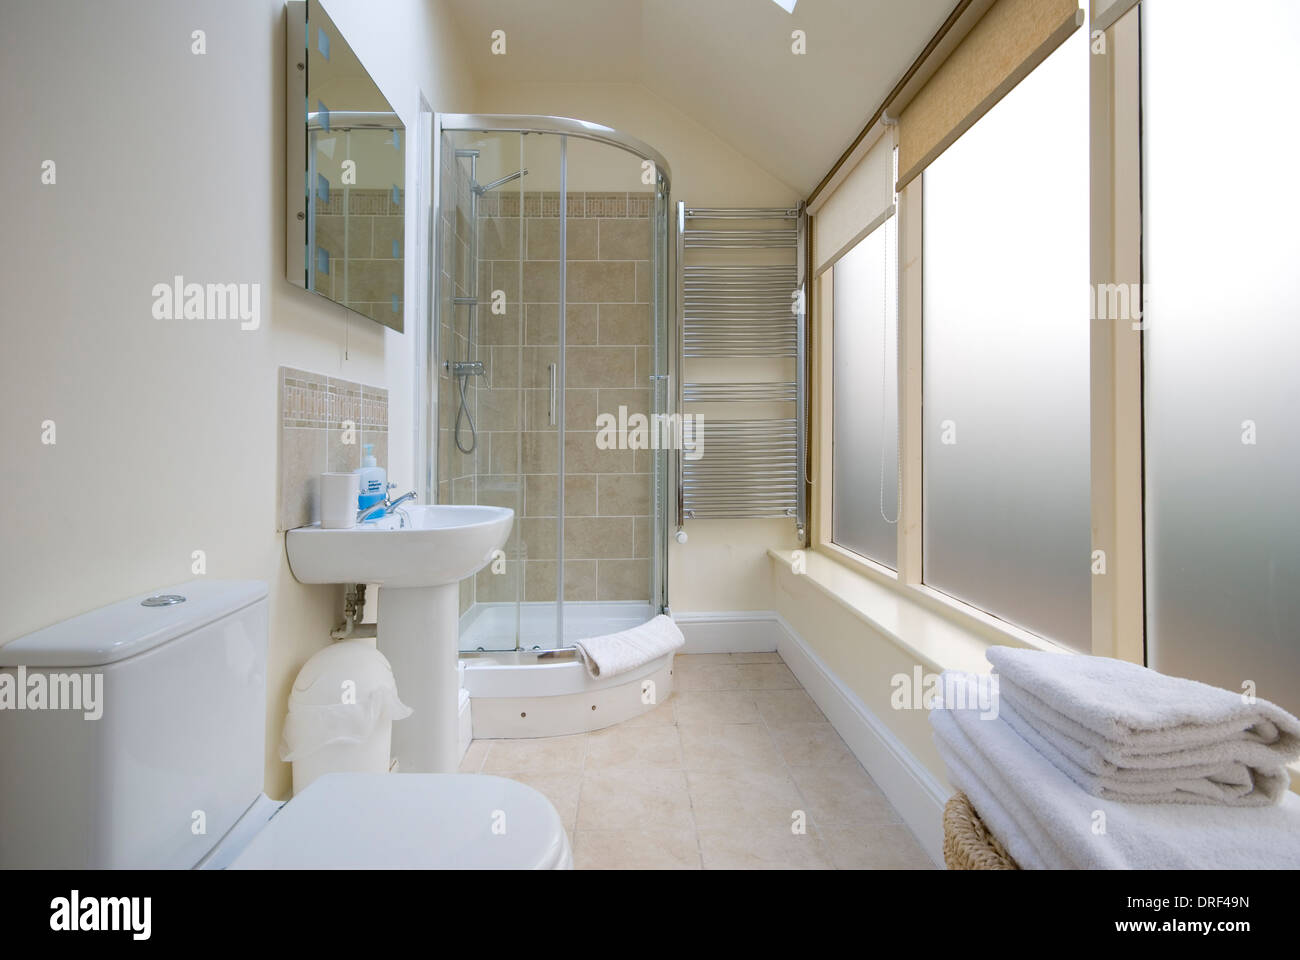 Salle de douche longue et fine avec de grandes fenêtres opaques Banque D'Images